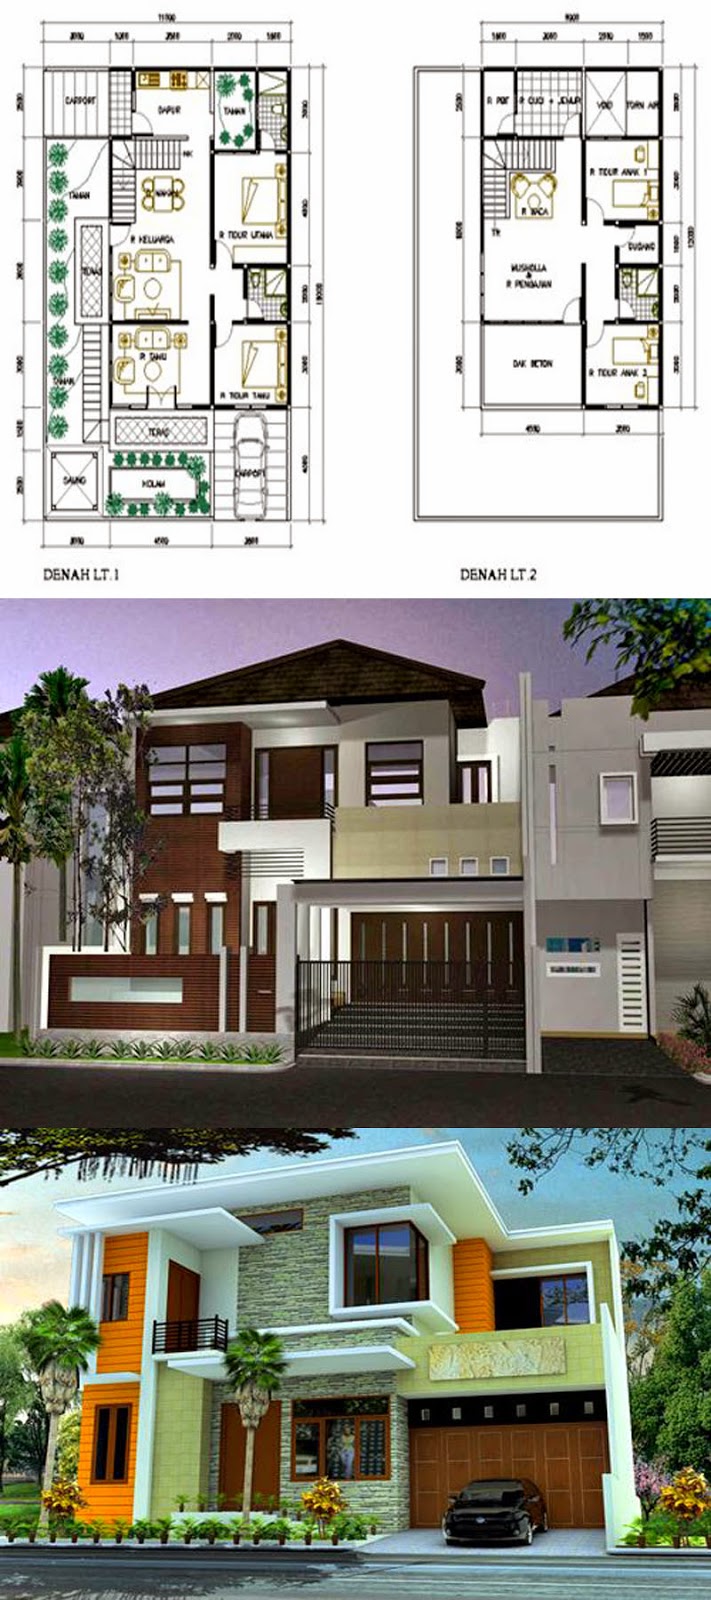 Gambar Rumah Minimalis 2 Lantai Type 70 Desain Rumah Minimalis